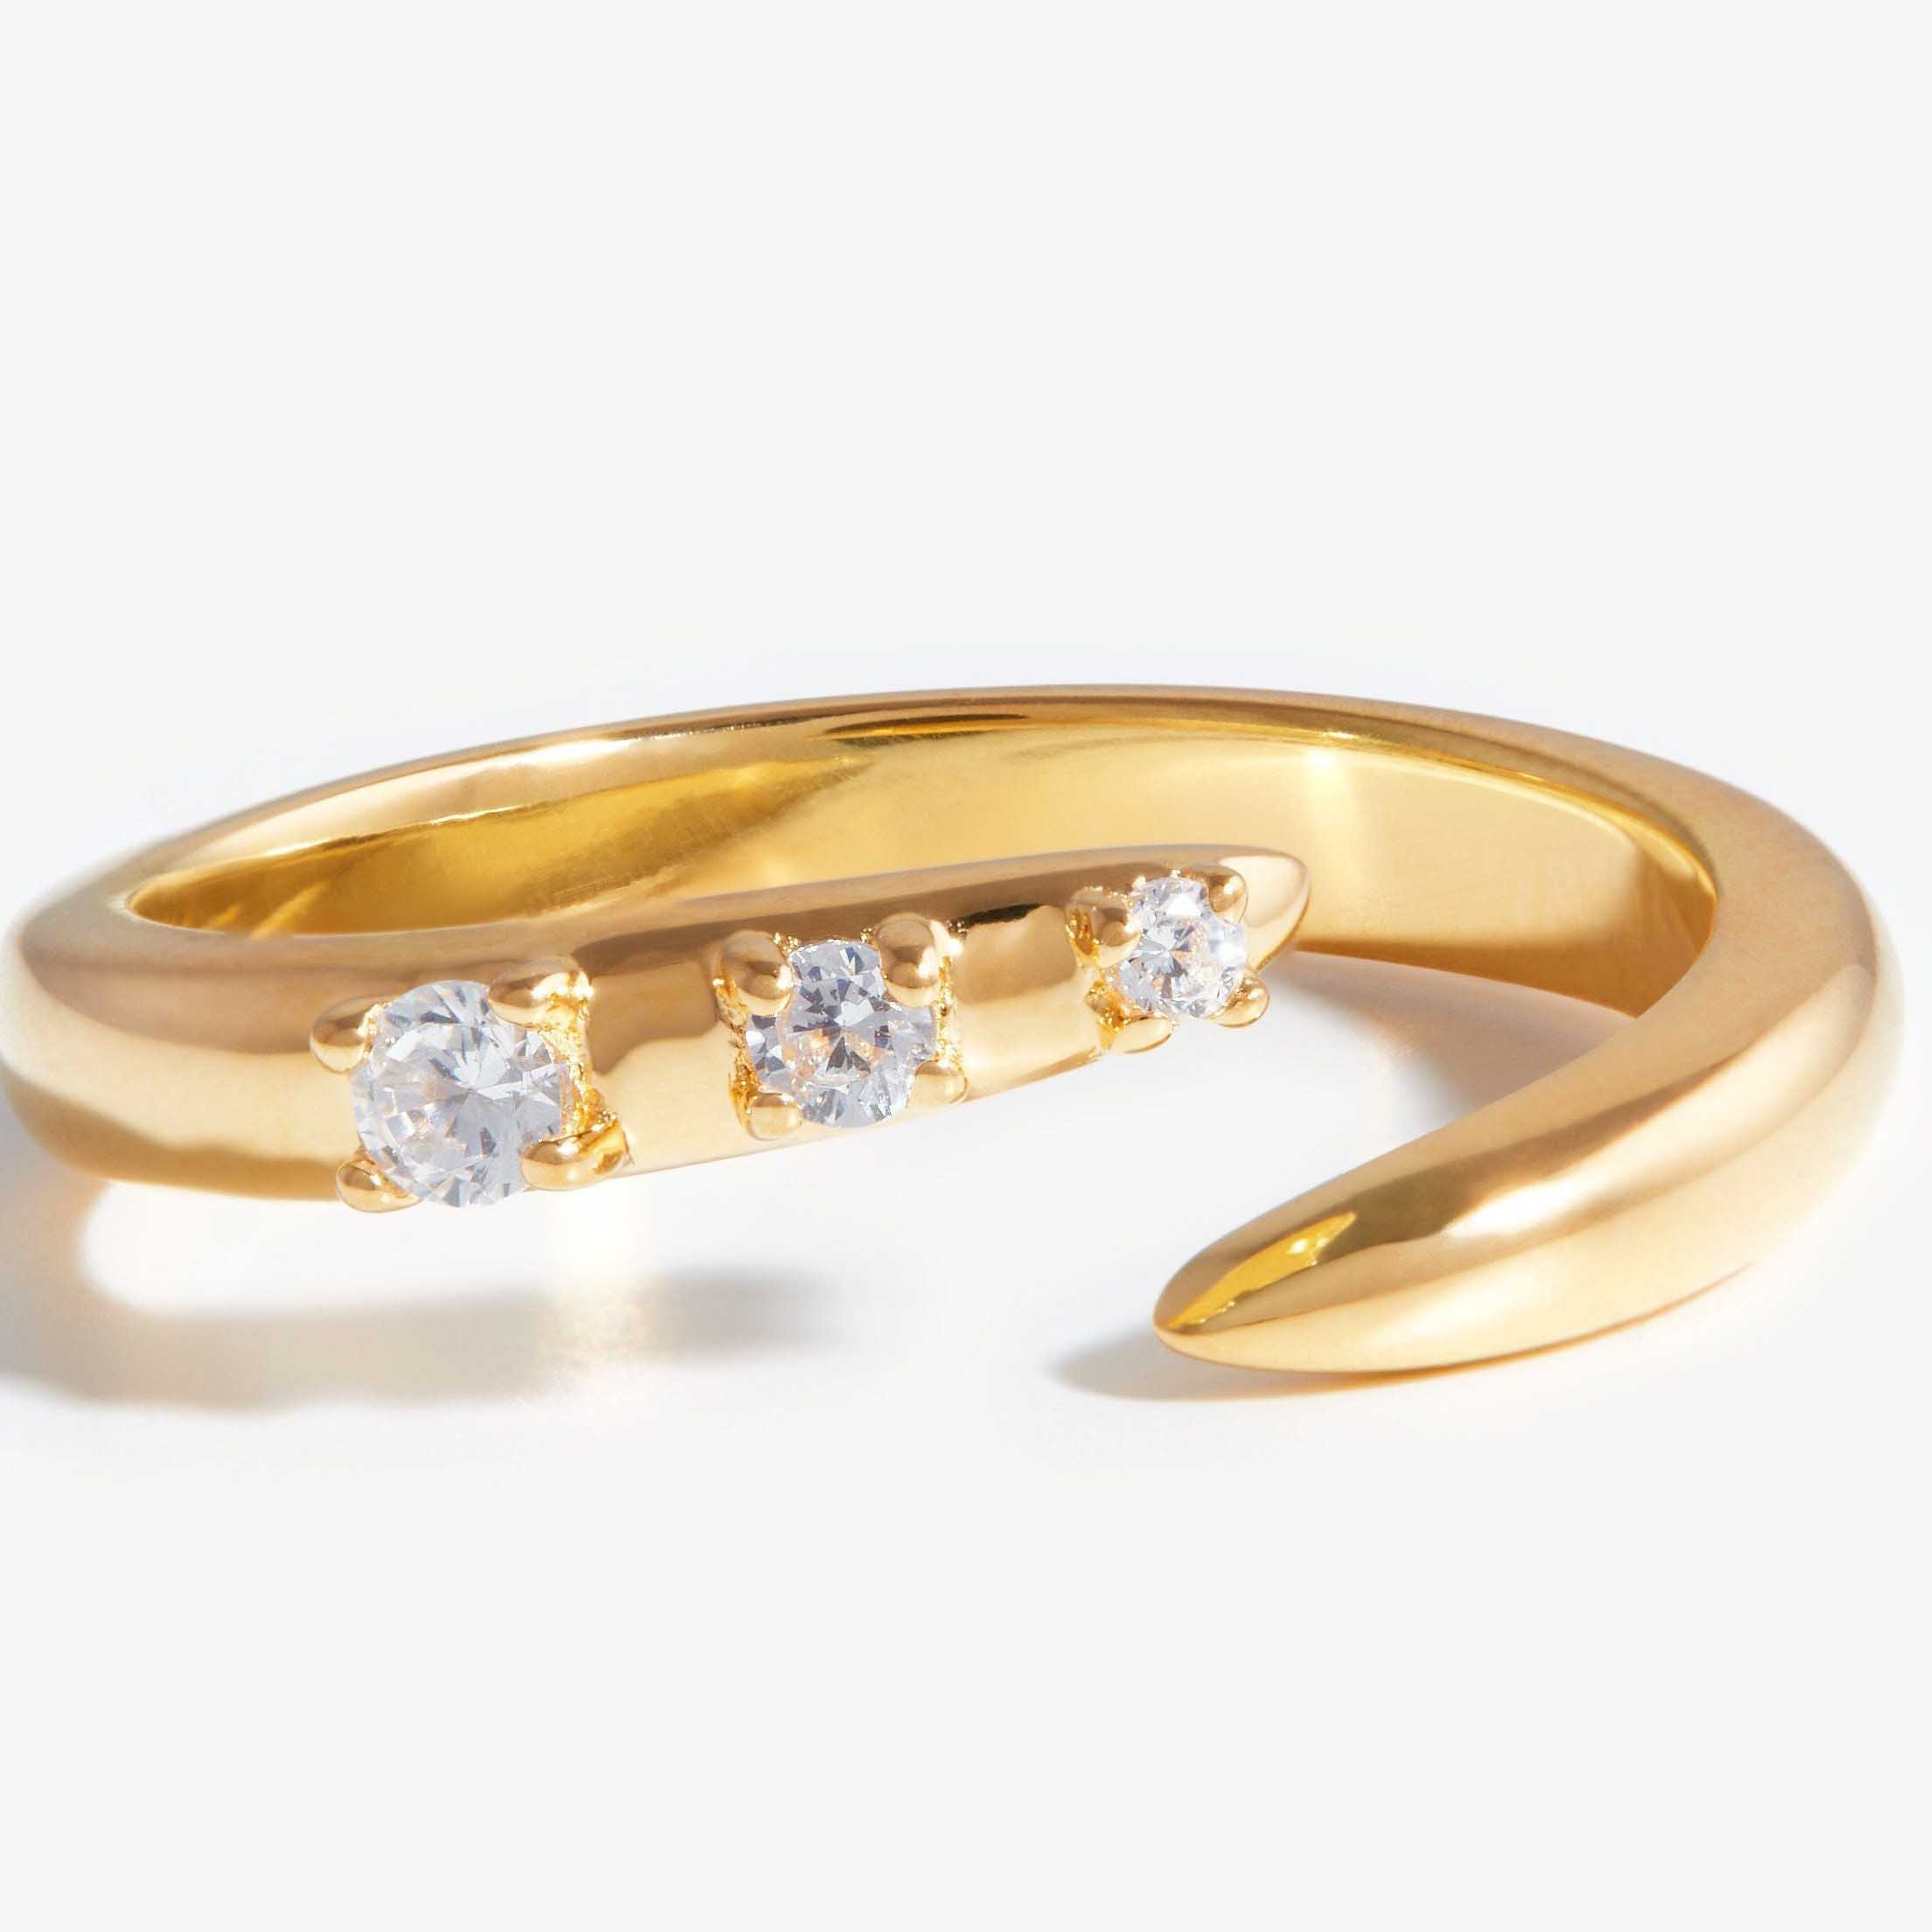 Cincin terbuka zirkonia kubik grosir custom terbuat dari bahan perak namun berwarna emas.